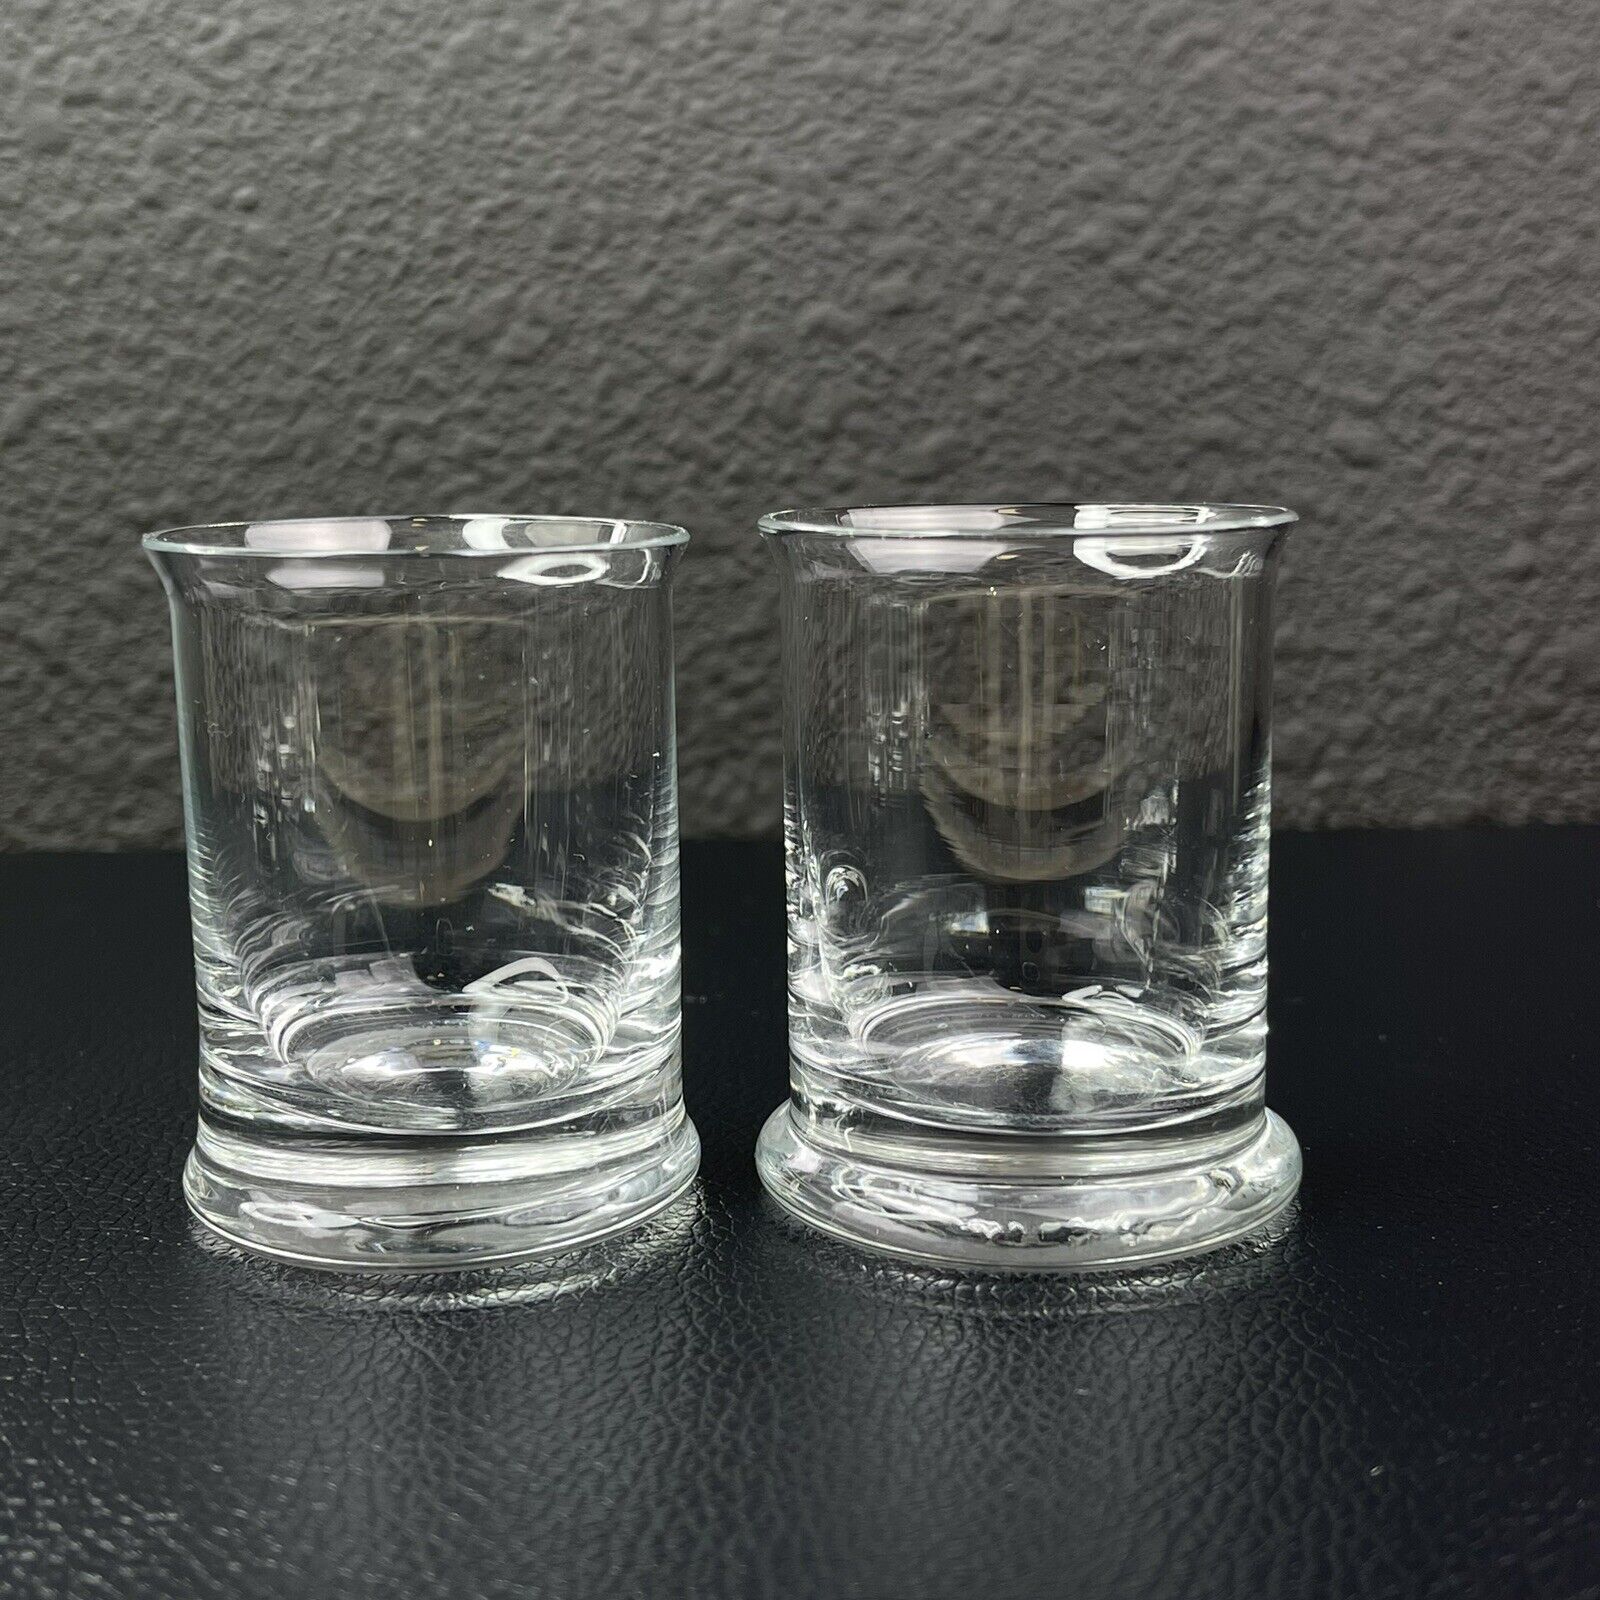 2 Vintage Art Glass Hand Blown Shot glasses glass